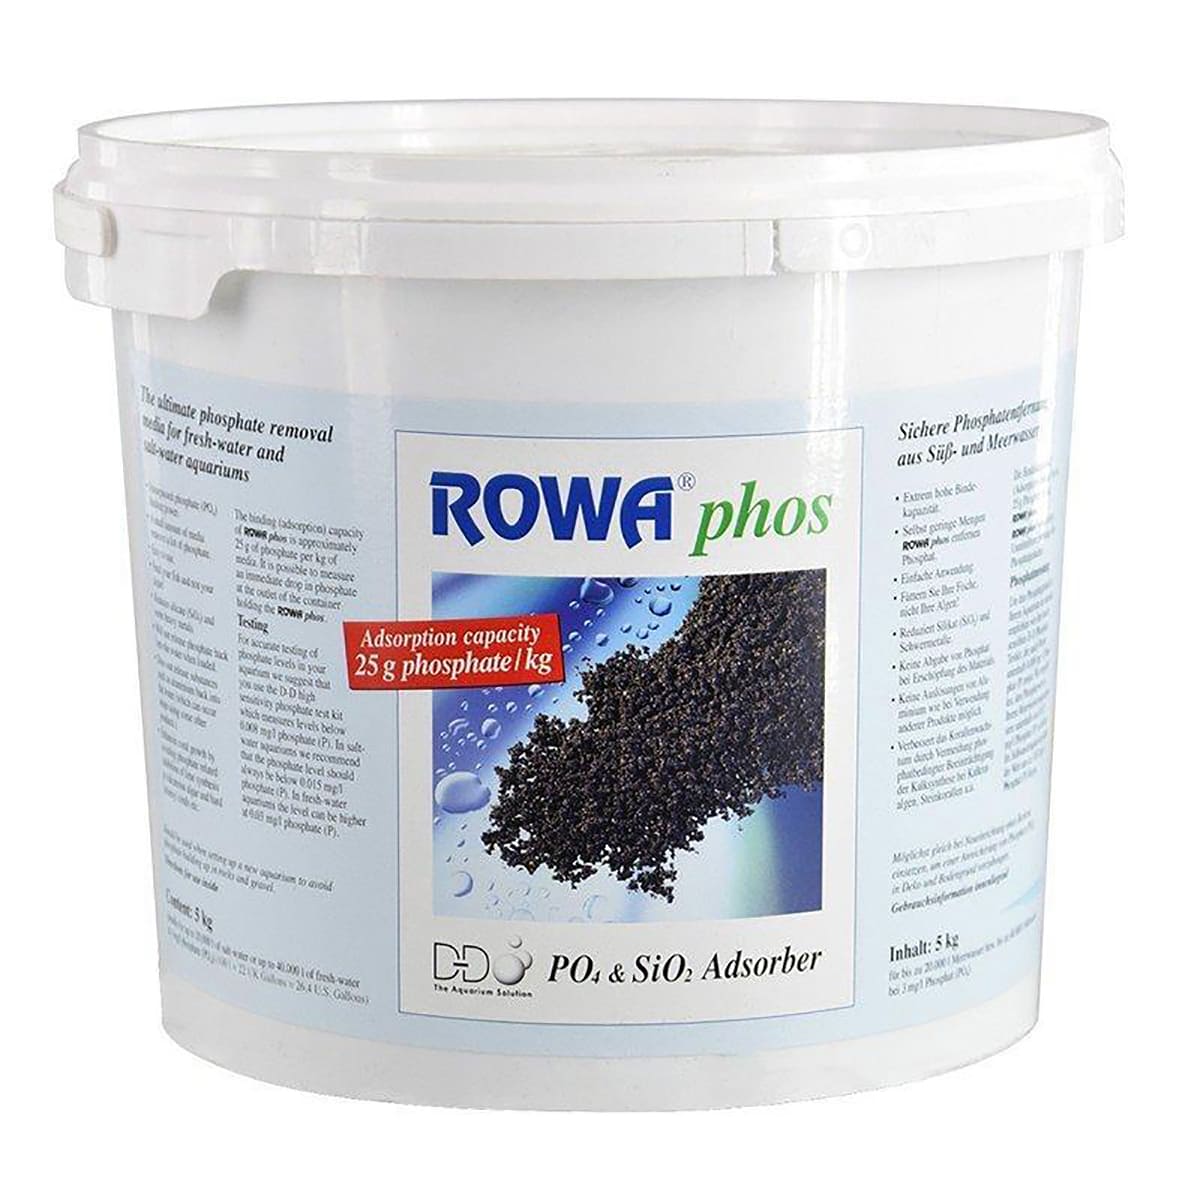 Removedor de Fosfato e Silicato ROWA PHOS 5KG - Balde